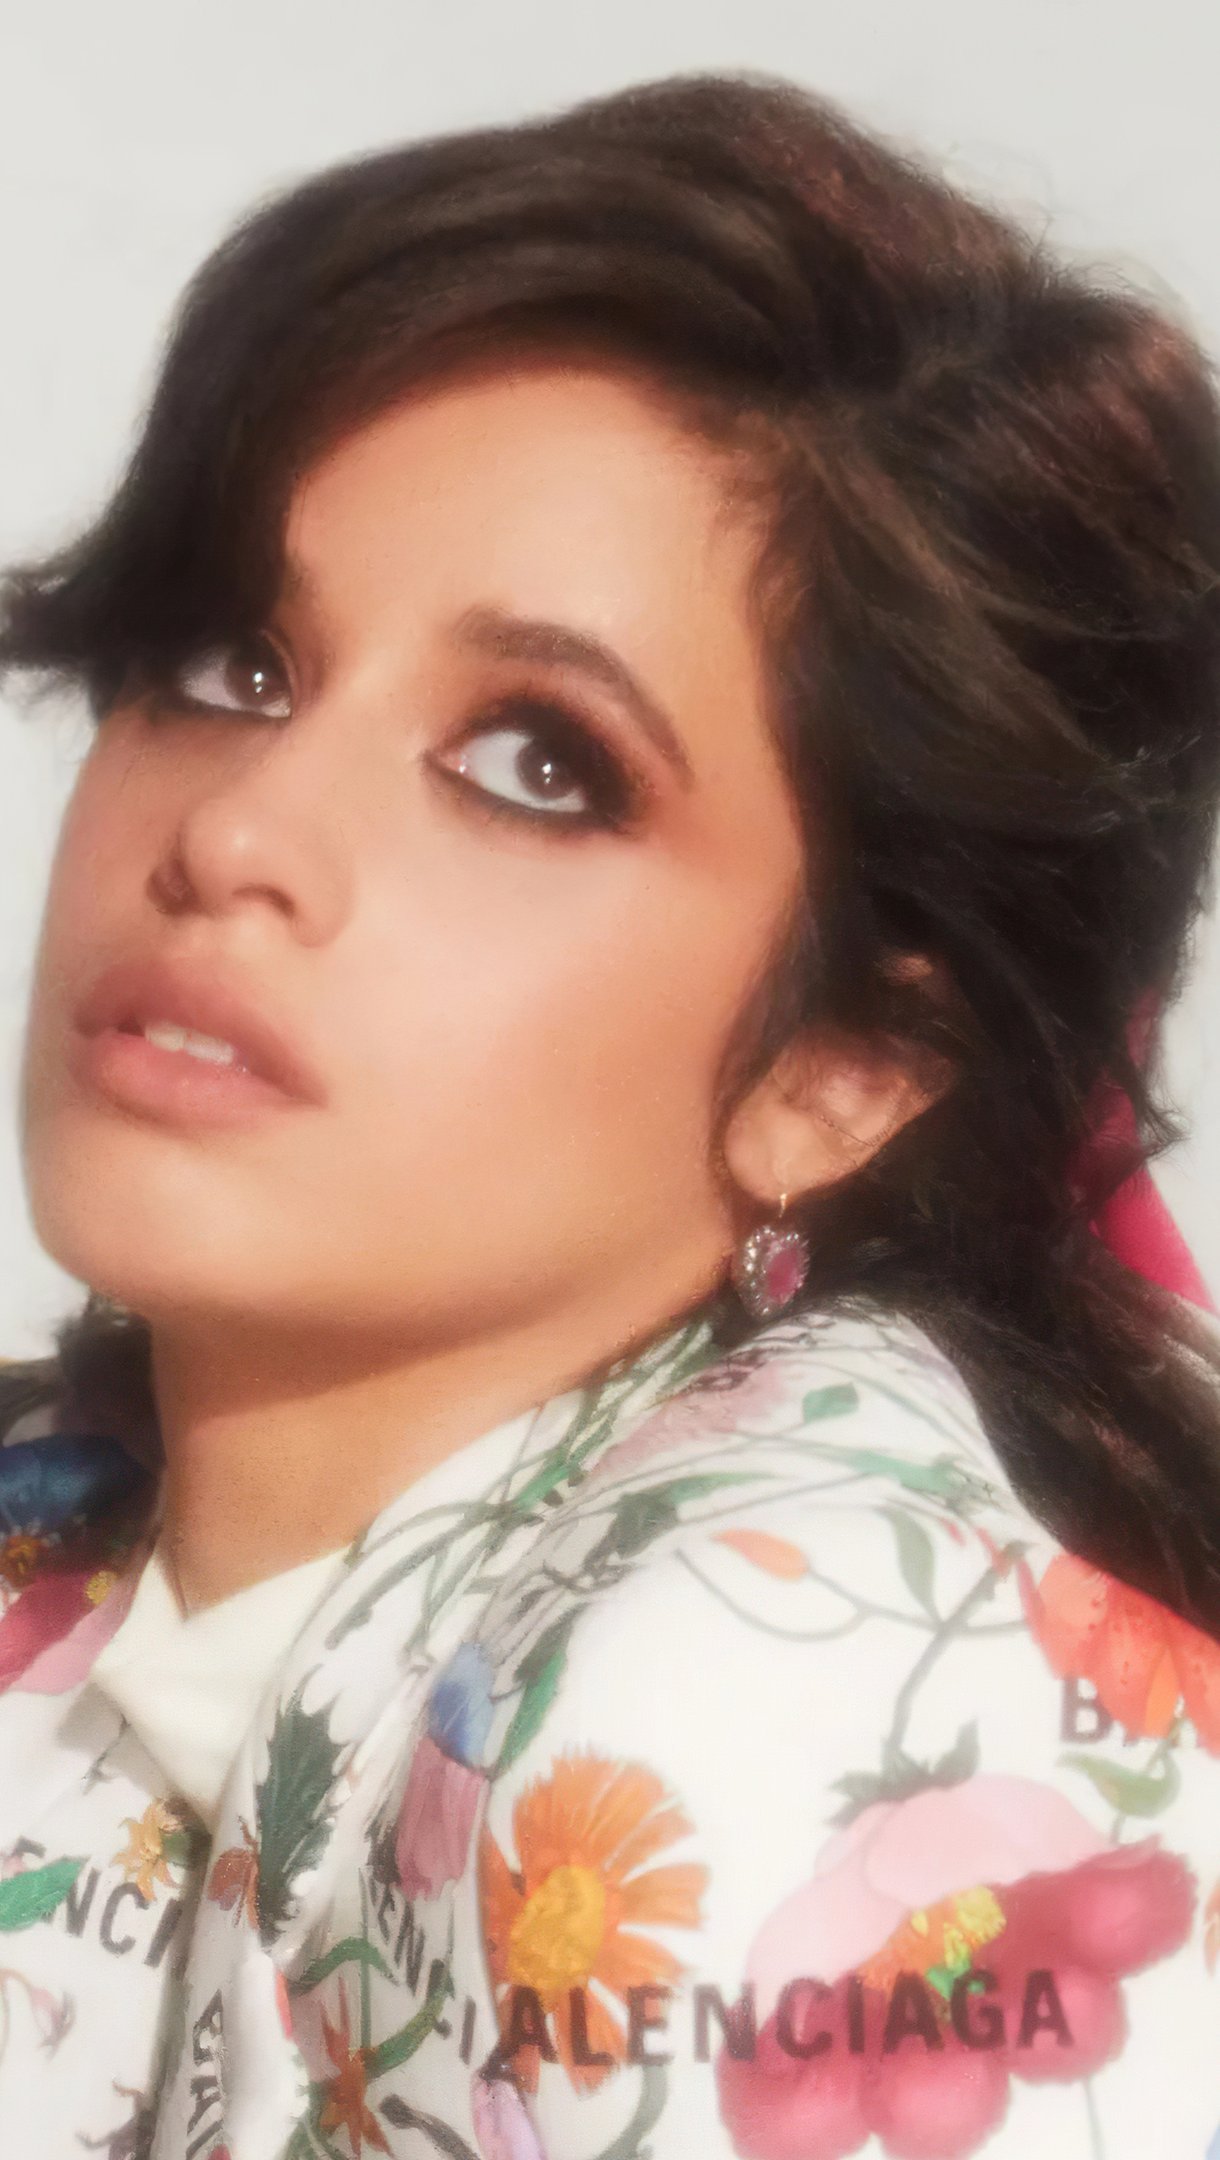 Fondos de pantalla Camila Cabello para revista Glamour Vertical